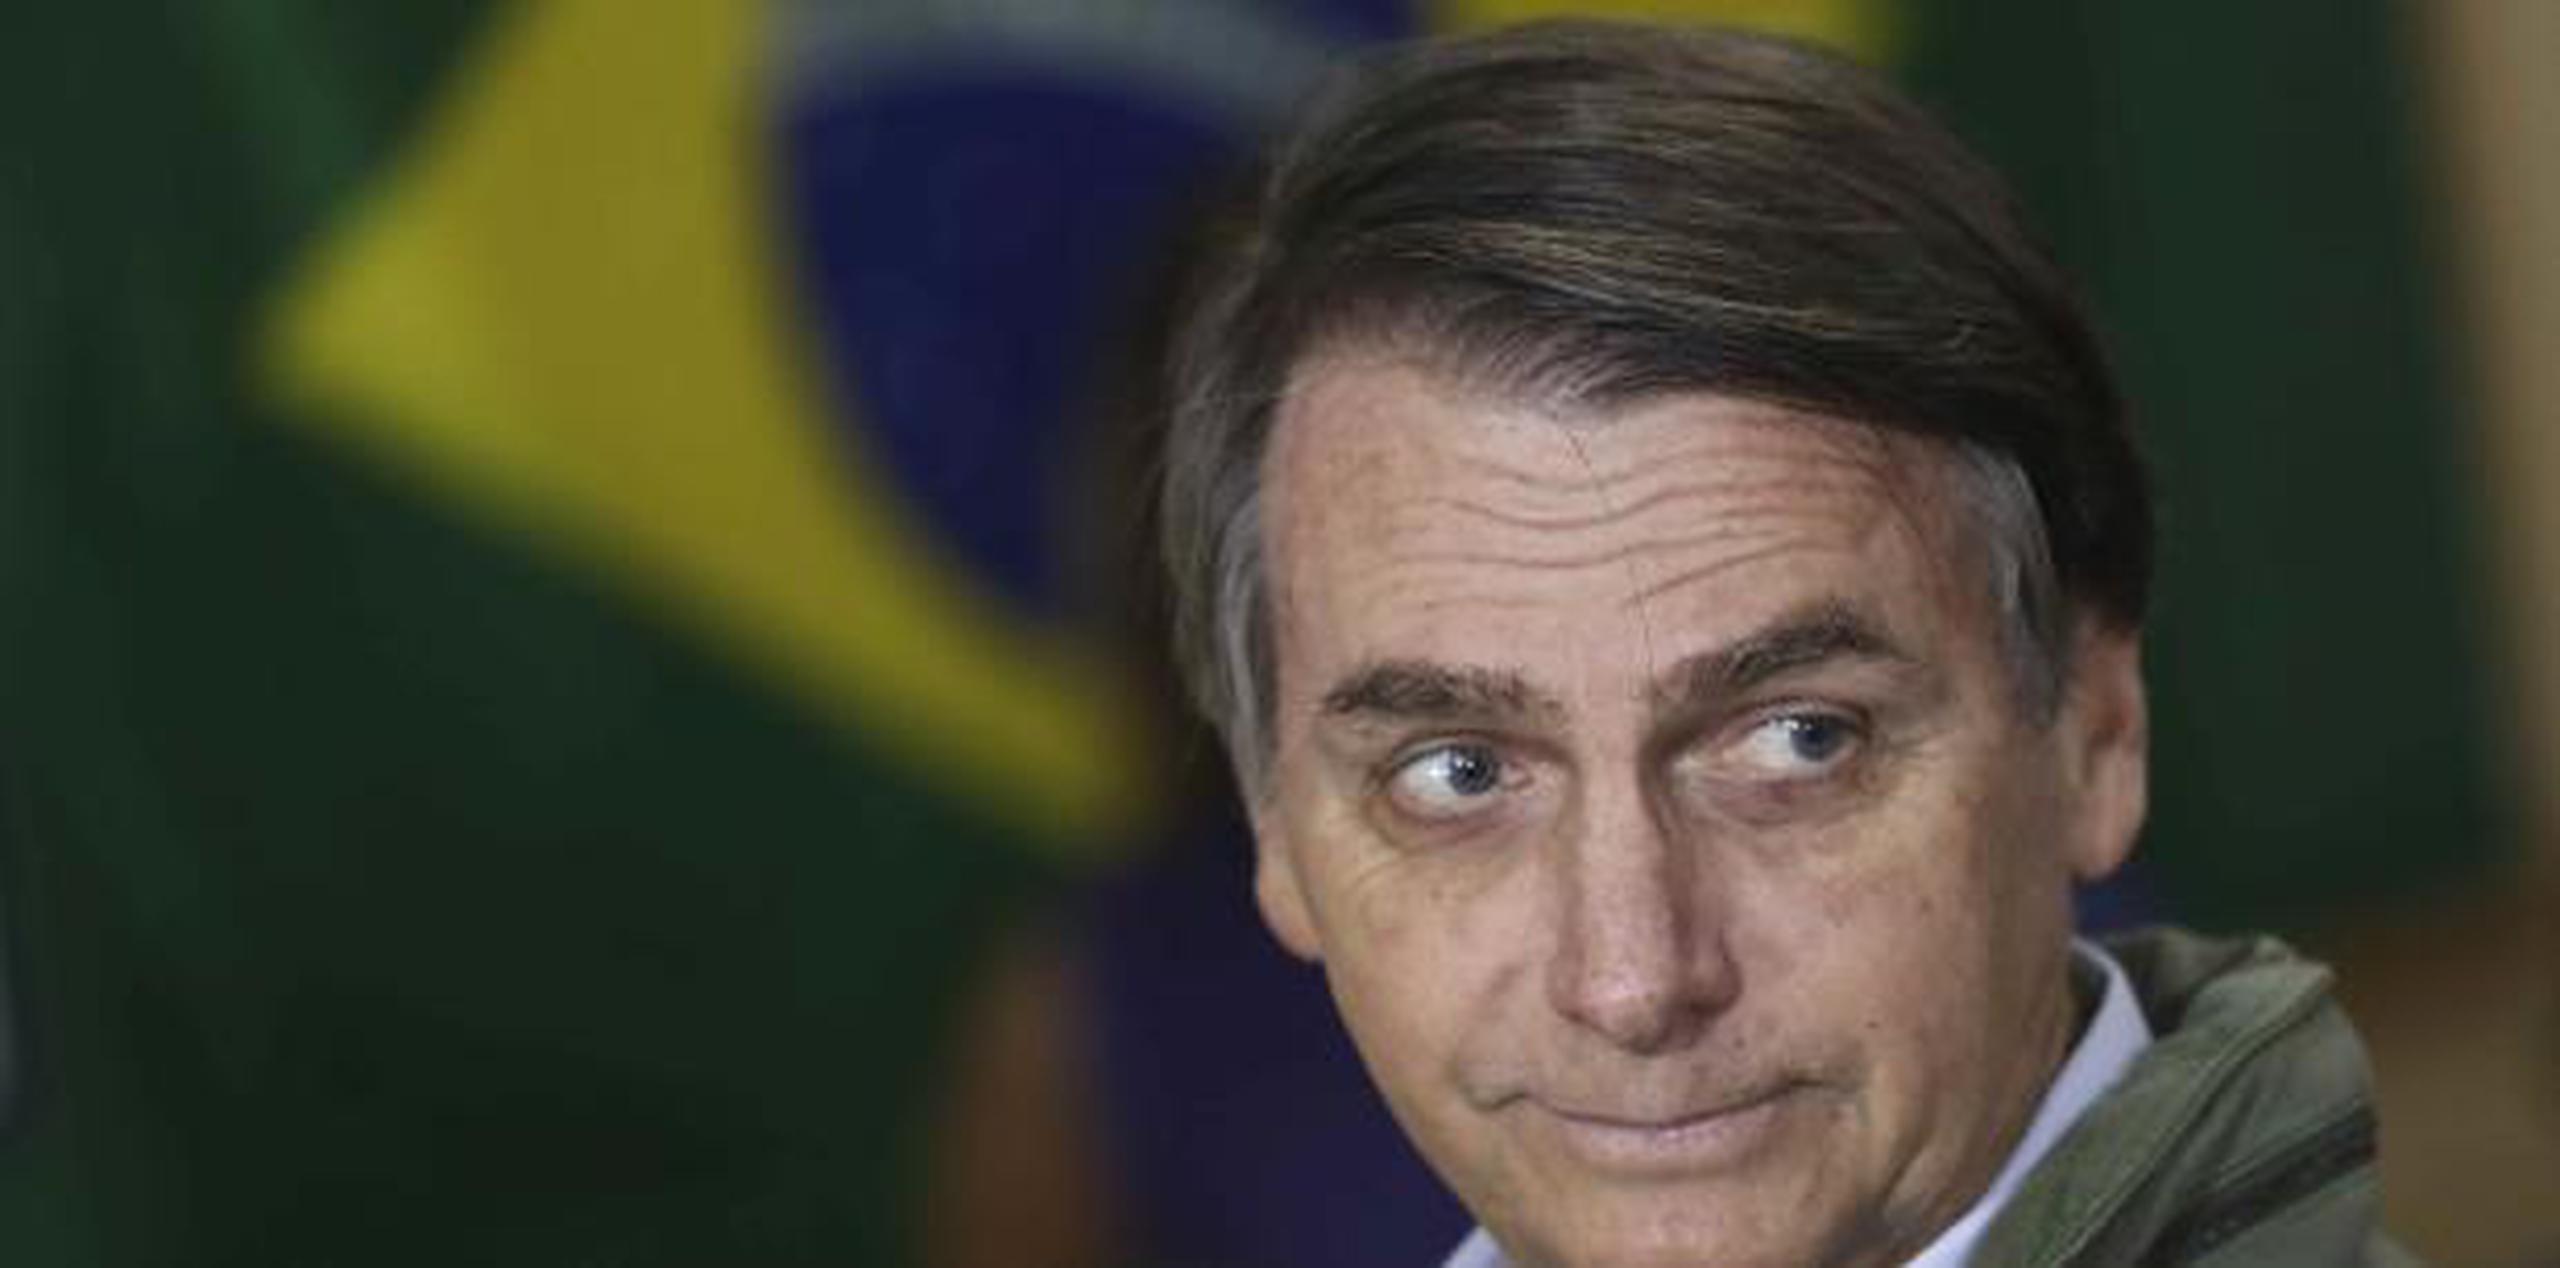 Bolsonaro, aquí con la bandera de Brasil al fondo,  ganó a pesar des us radicales posturas y su renuencia a debatir con su rival por "razones médicas". (AP)